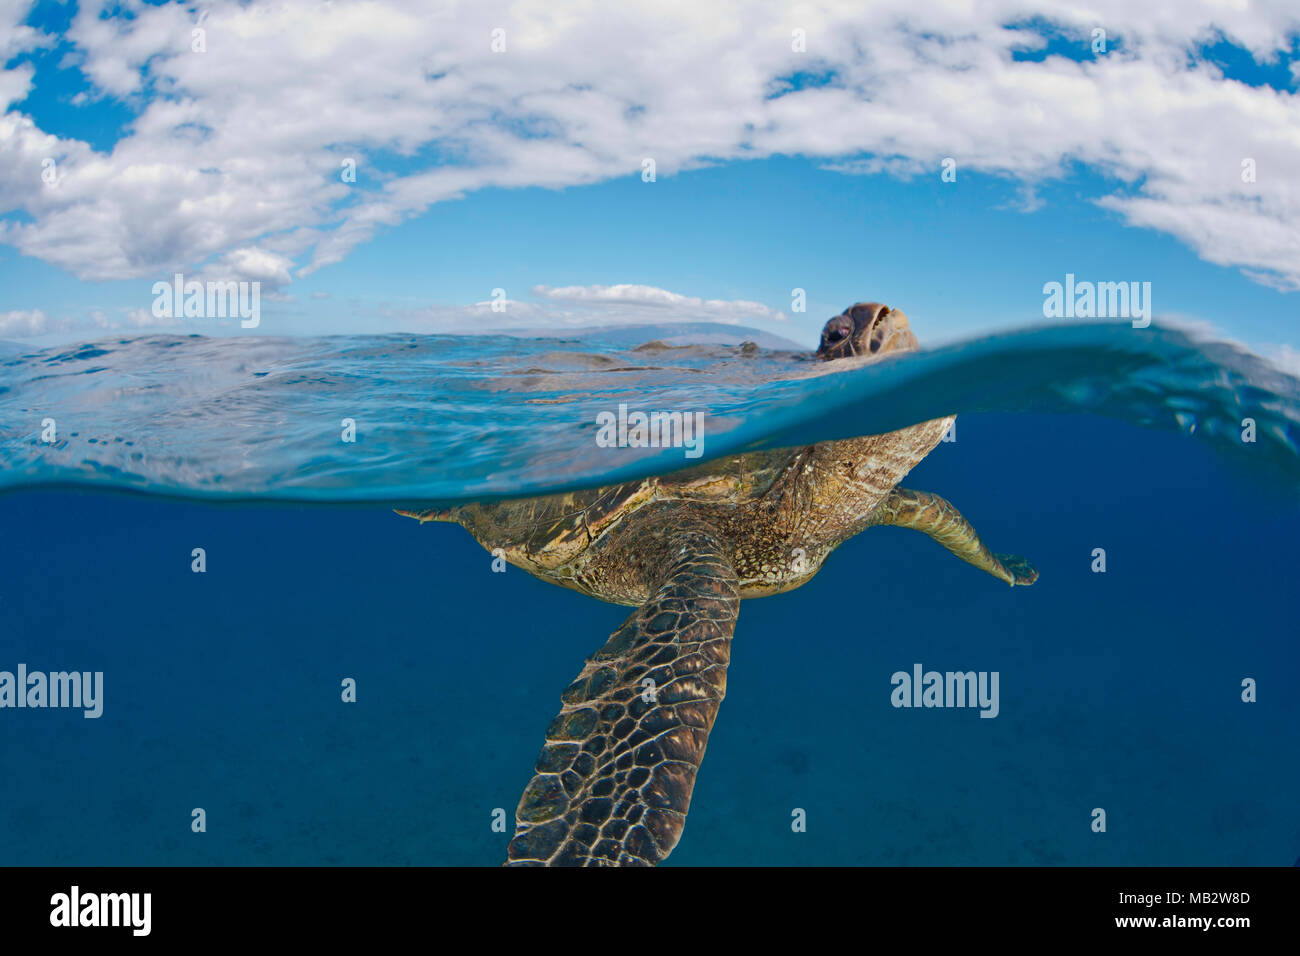 Eine grüne Meeresschildkröte, Chelonia mydas, hebt sie den Kopf über der Oberfläche für einen Atemzug, eine bedrohte Art, Hawaii. Dieses Bild ist keine digitale c Stockfoto